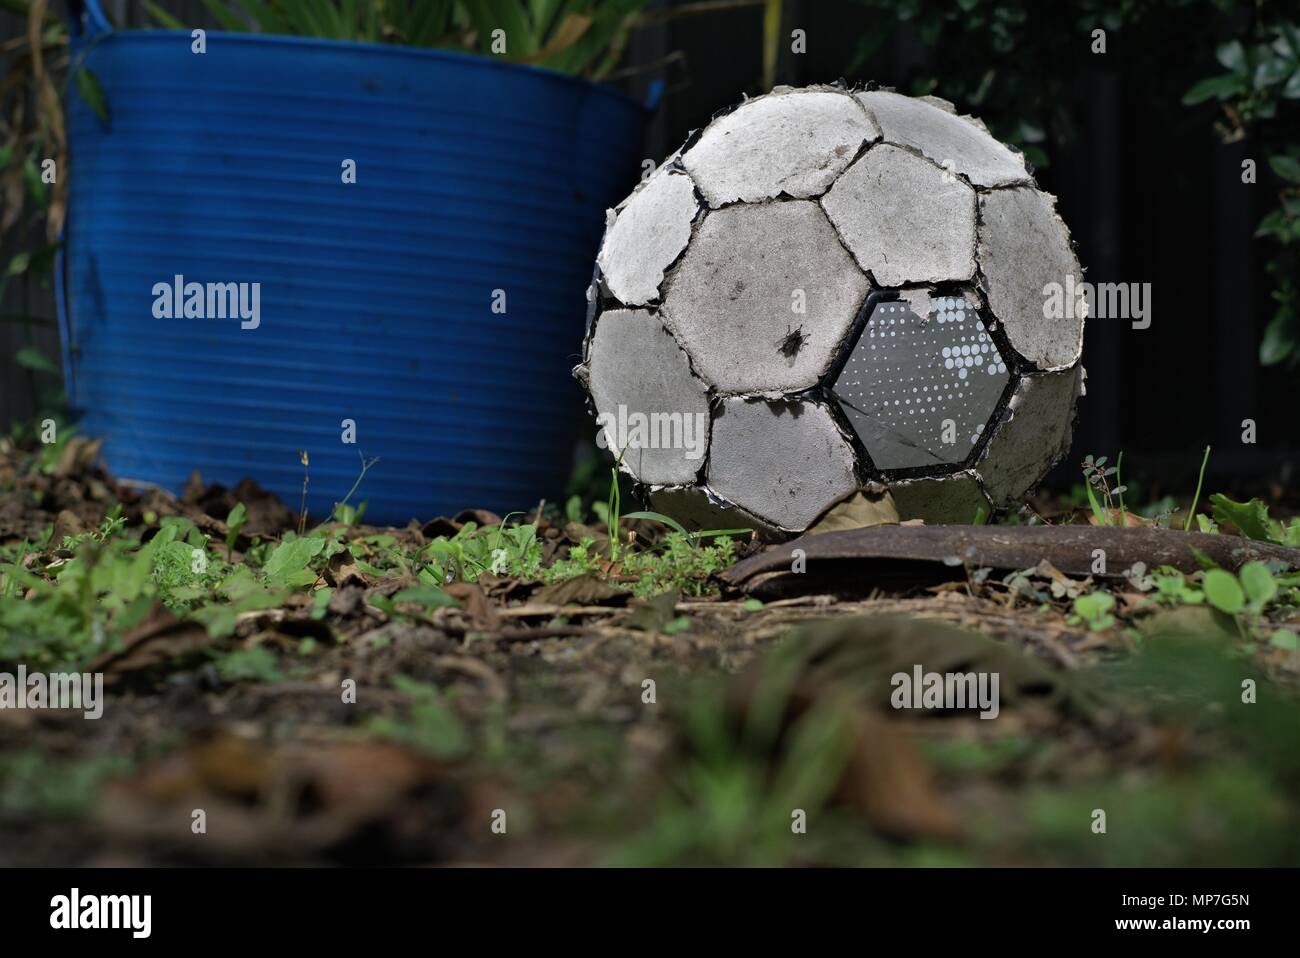 Zerrissen alte Fußball auf Gras legen. Abgenutzt, Fußball. Begriff der Nichterwerbstätigen oder nutzlos Objekt. Stockfoto